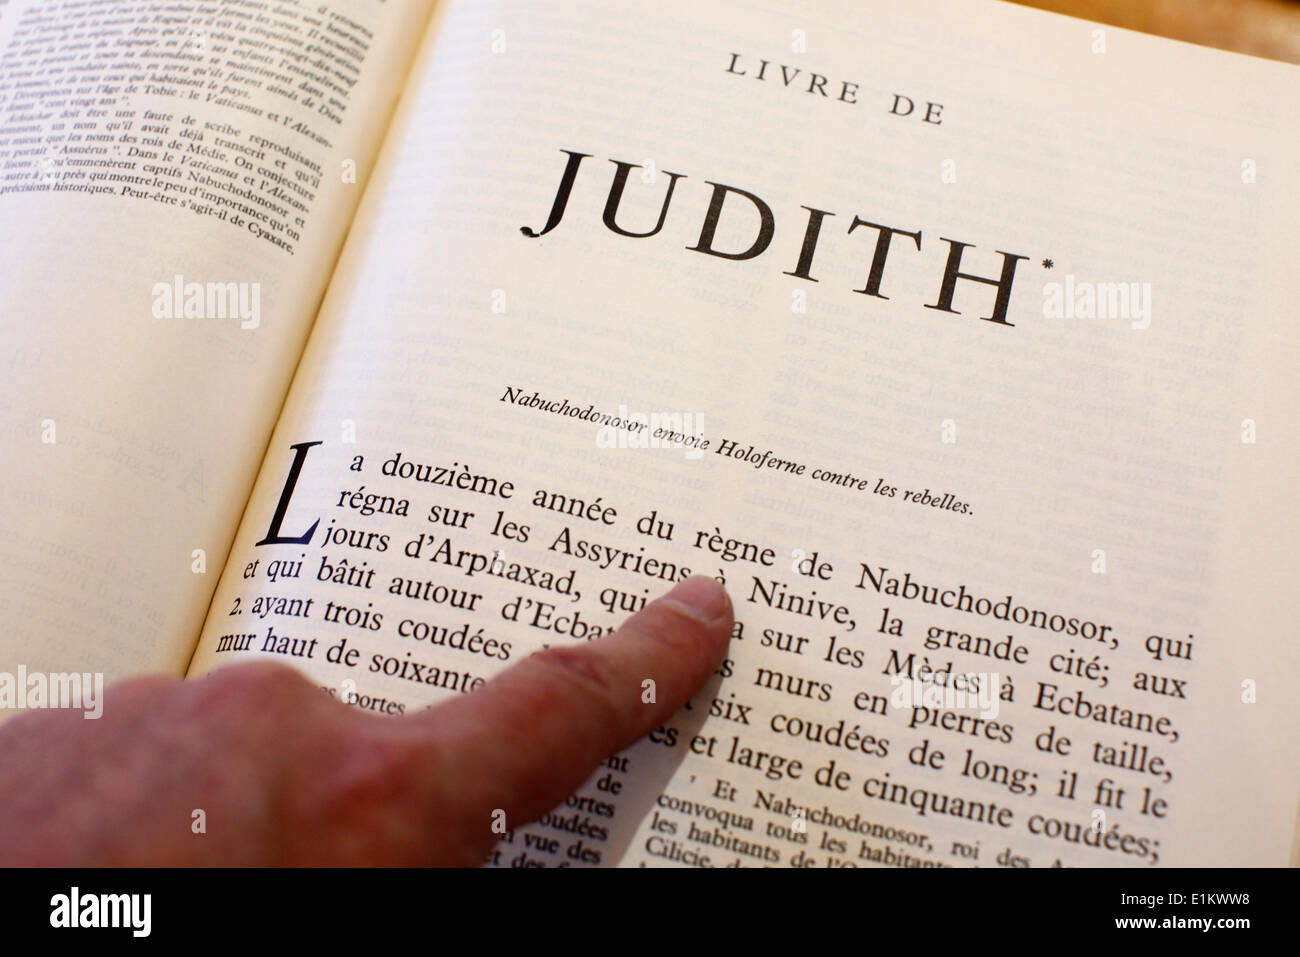 Il Vecchio Testamento. Libro di Judith Foto Stock